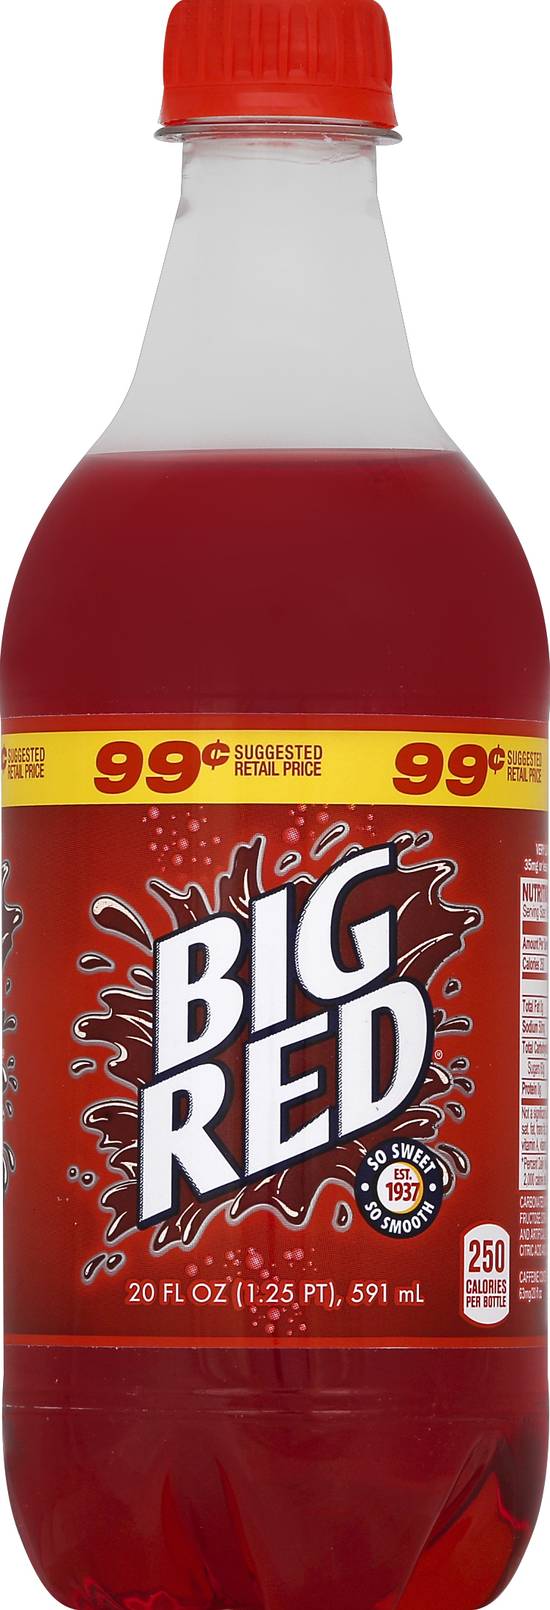 Big Red Soft Drink (20 fl oz) (red soda)